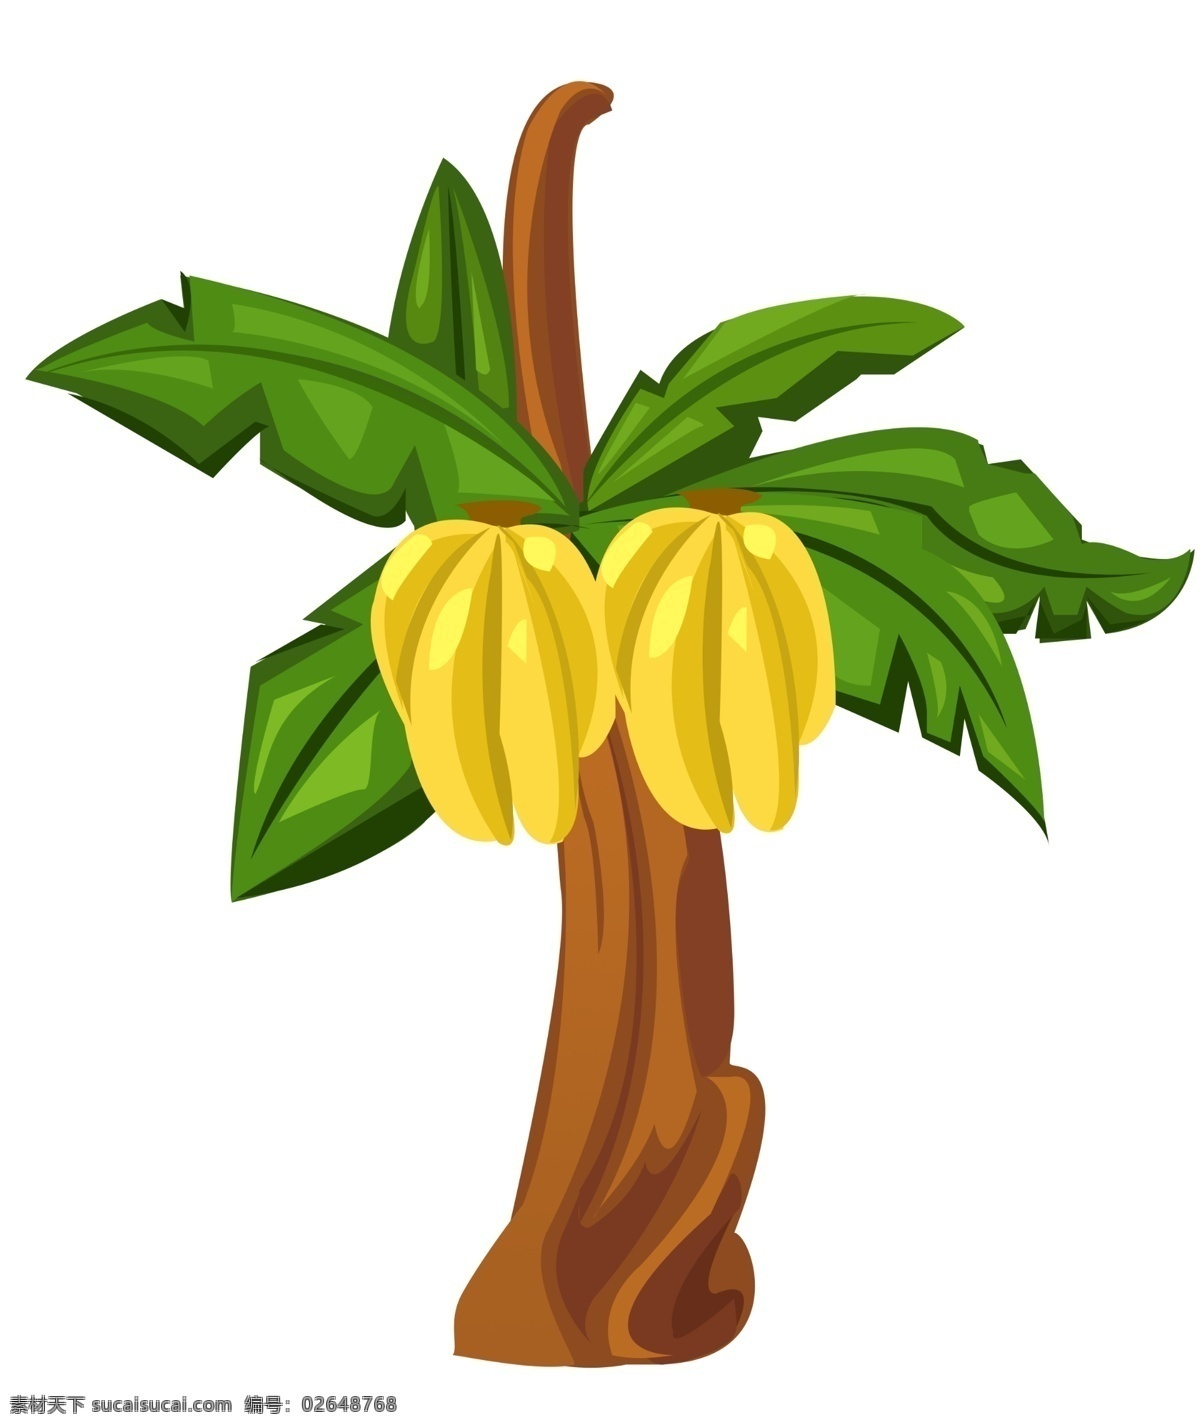 卡通香蕉树 香蕉 简笔 手绘 夏季 手绘卡通素材 水彩 健康 水果 美味 彩绘 卡通香蕉 卡通设计